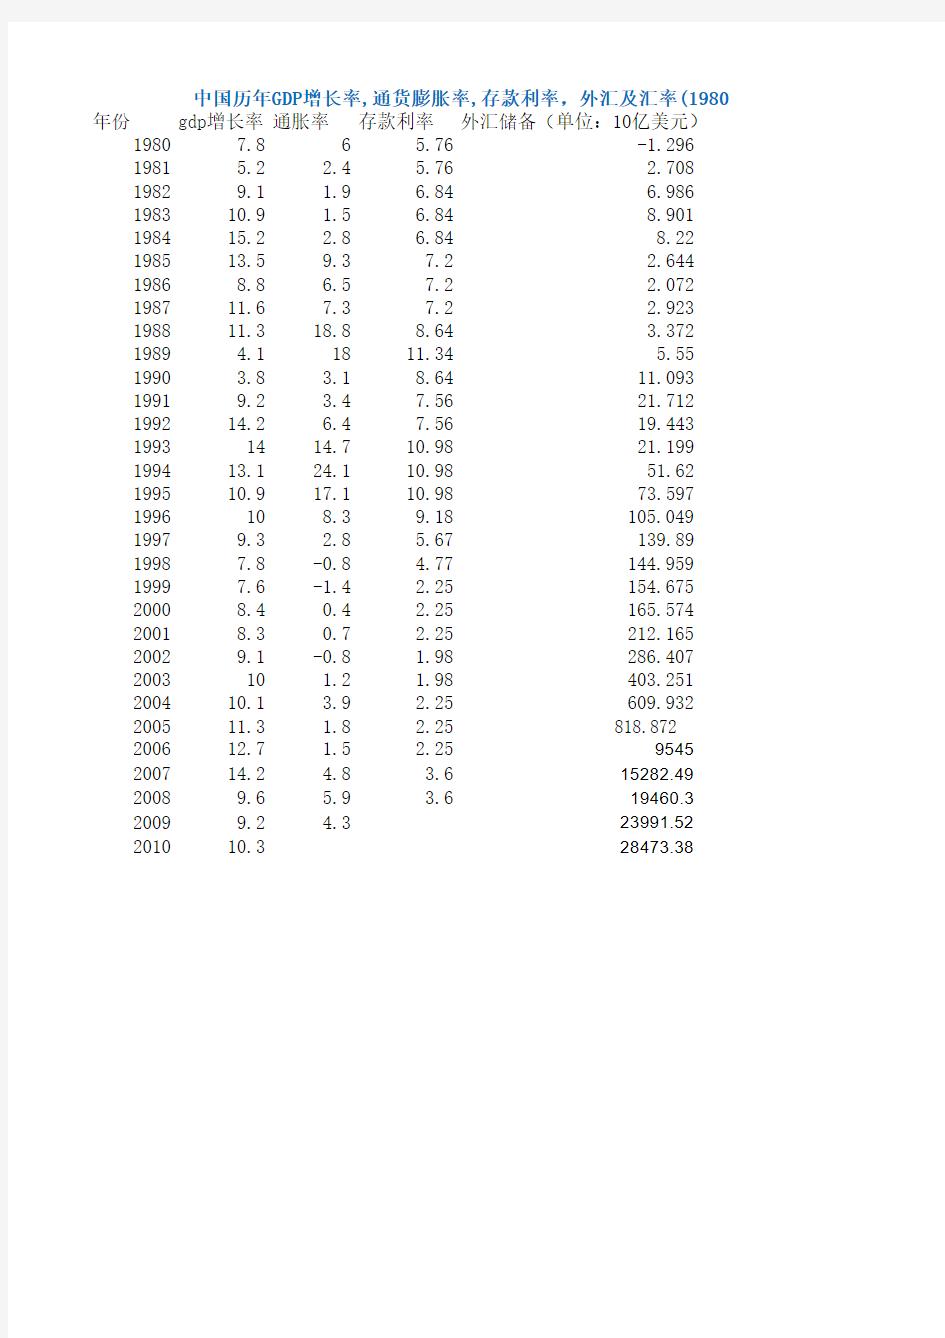 中国历年GDP增长率,通货膨胀率,存款利率,外汇及汇率(1980-2010)